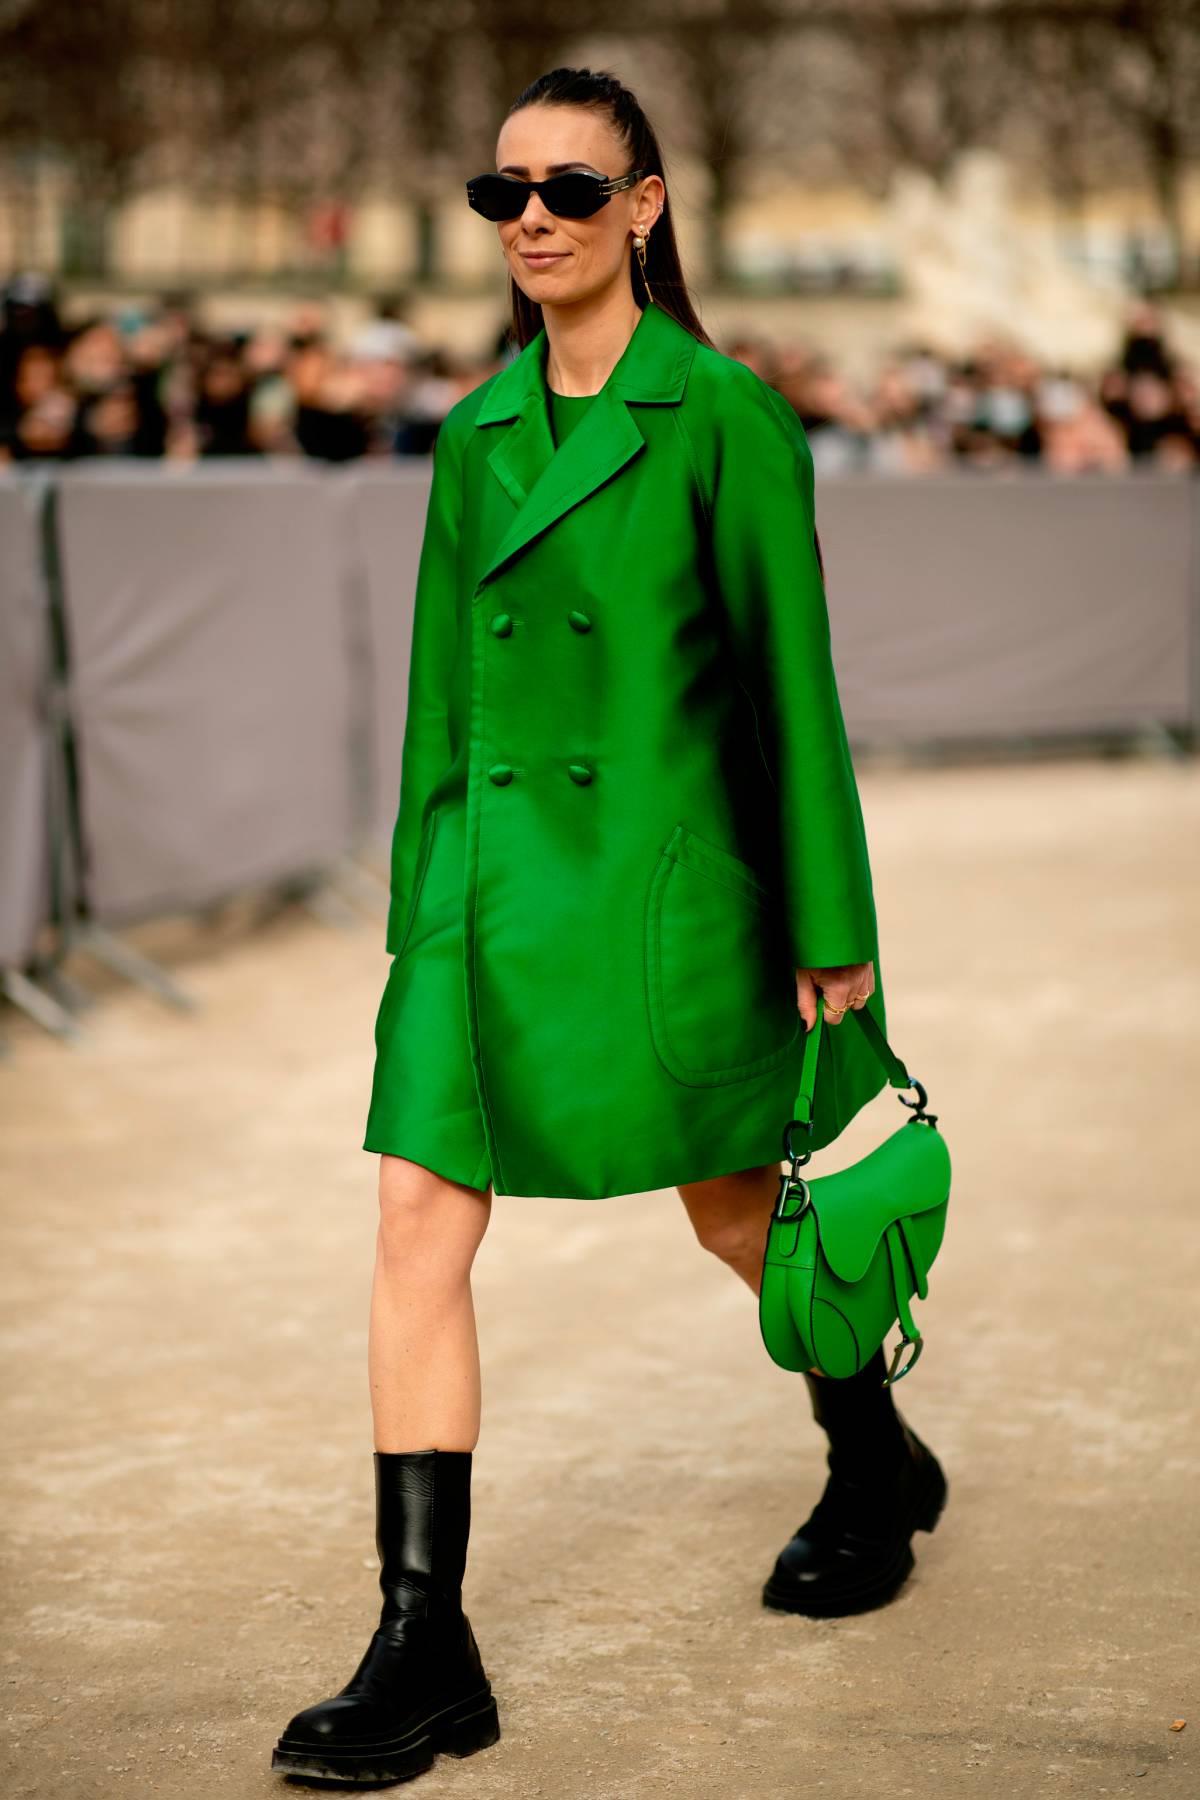 Vestido, bolso y abrigo verde. Un look parisino para la primavera